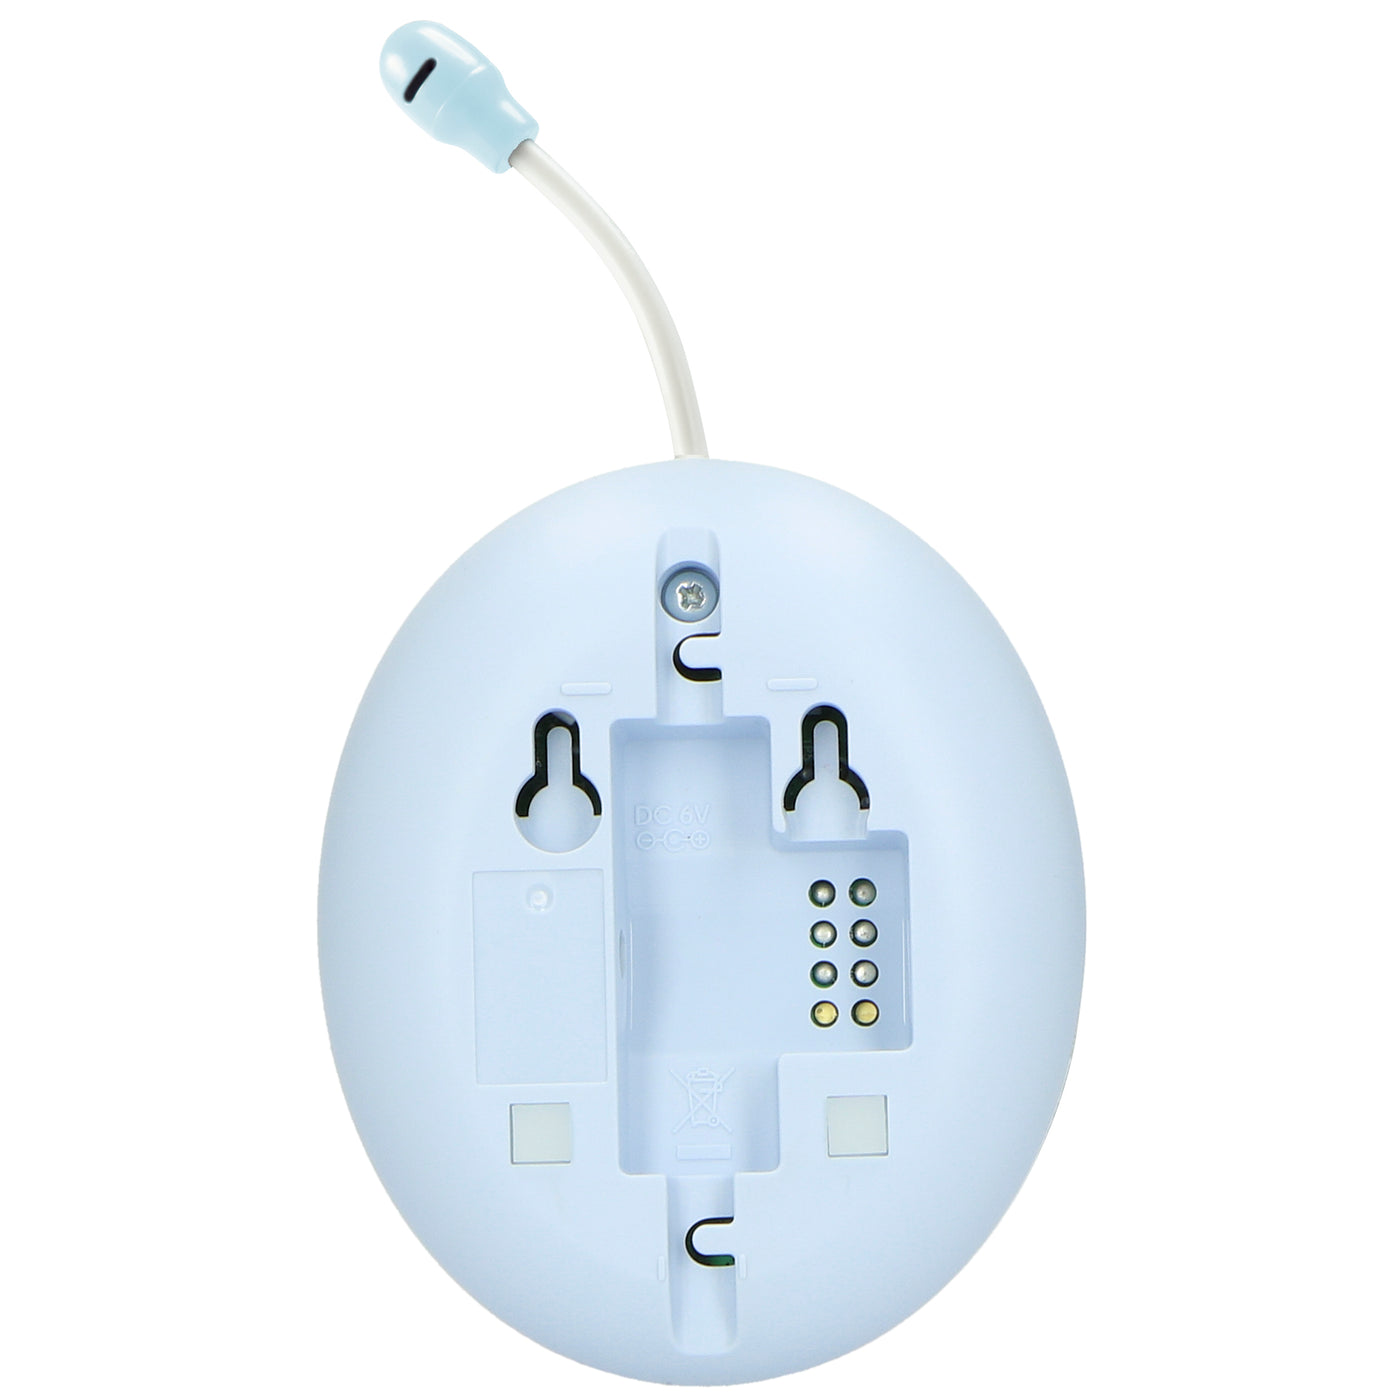 Alecto DBX-112 - DECT Babyphone mit Full ECO-Modus und Display, weiß/blau